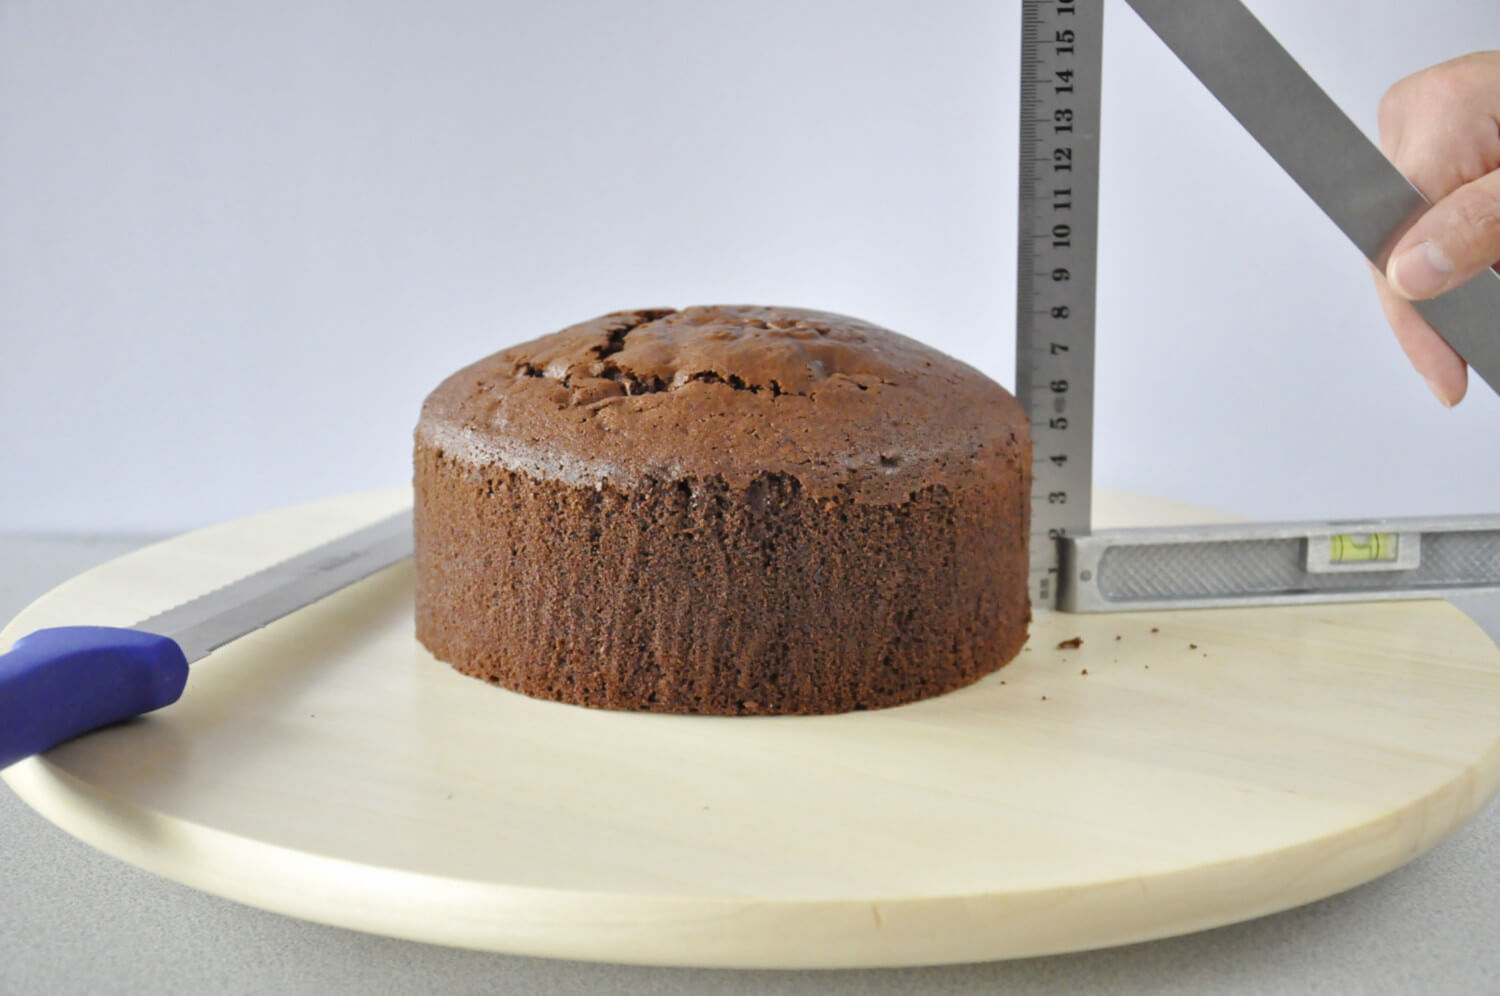 Jak złożyć idealnie prosty tort? Składanie tortu krok po kroku. tutorial, krojenie biszkoptu na równe blaty, nóż, linijka, biszkopt, patera obrotowa